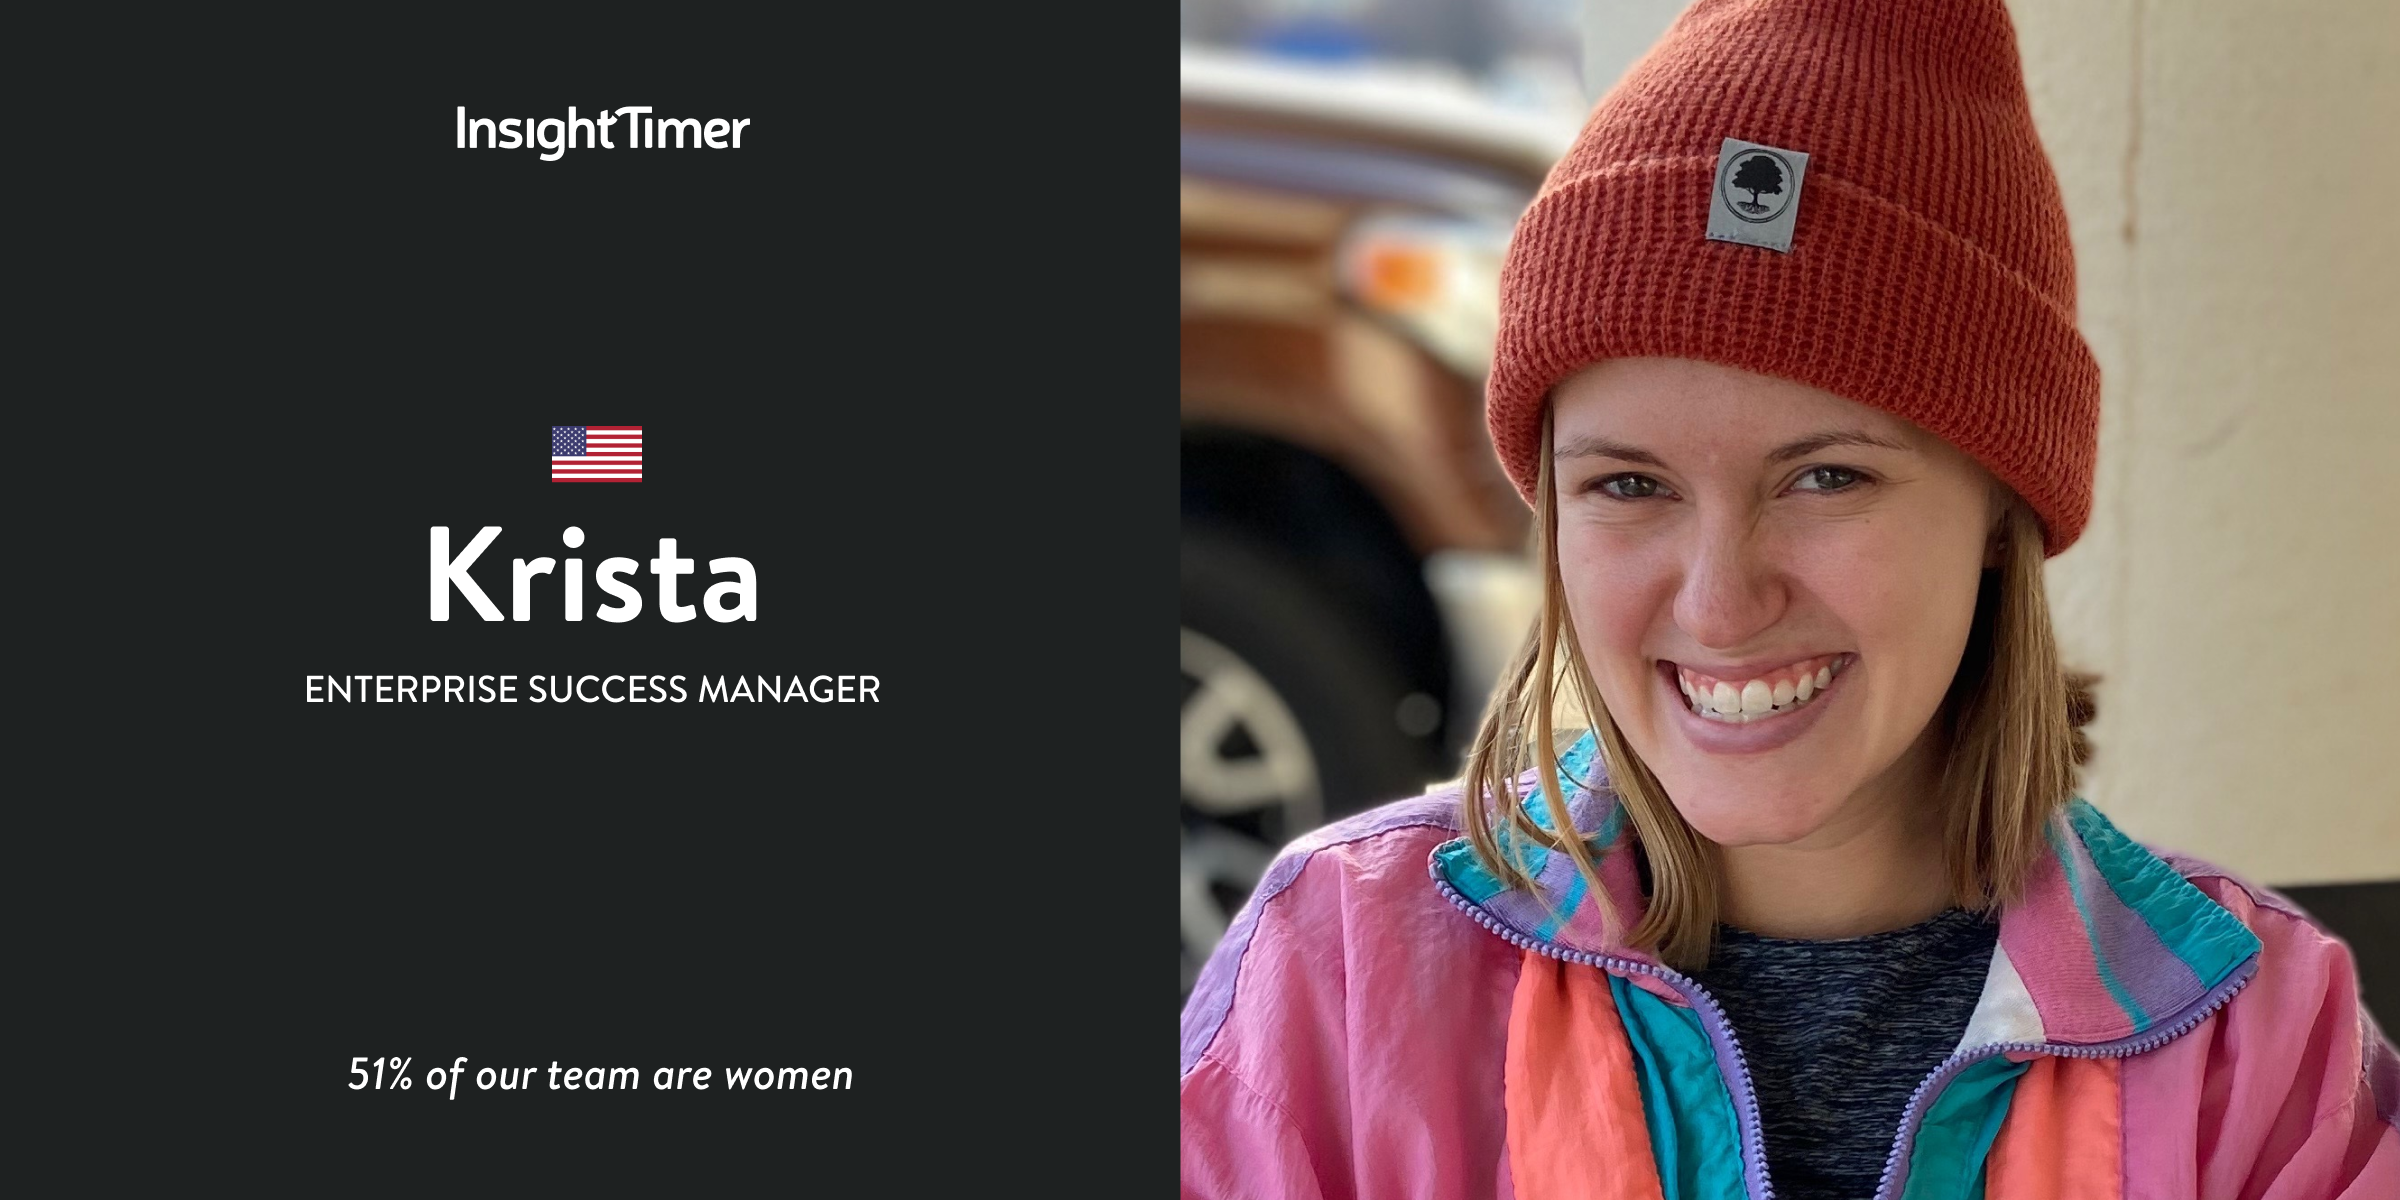 Meet Krista – Enterprise Success Manager